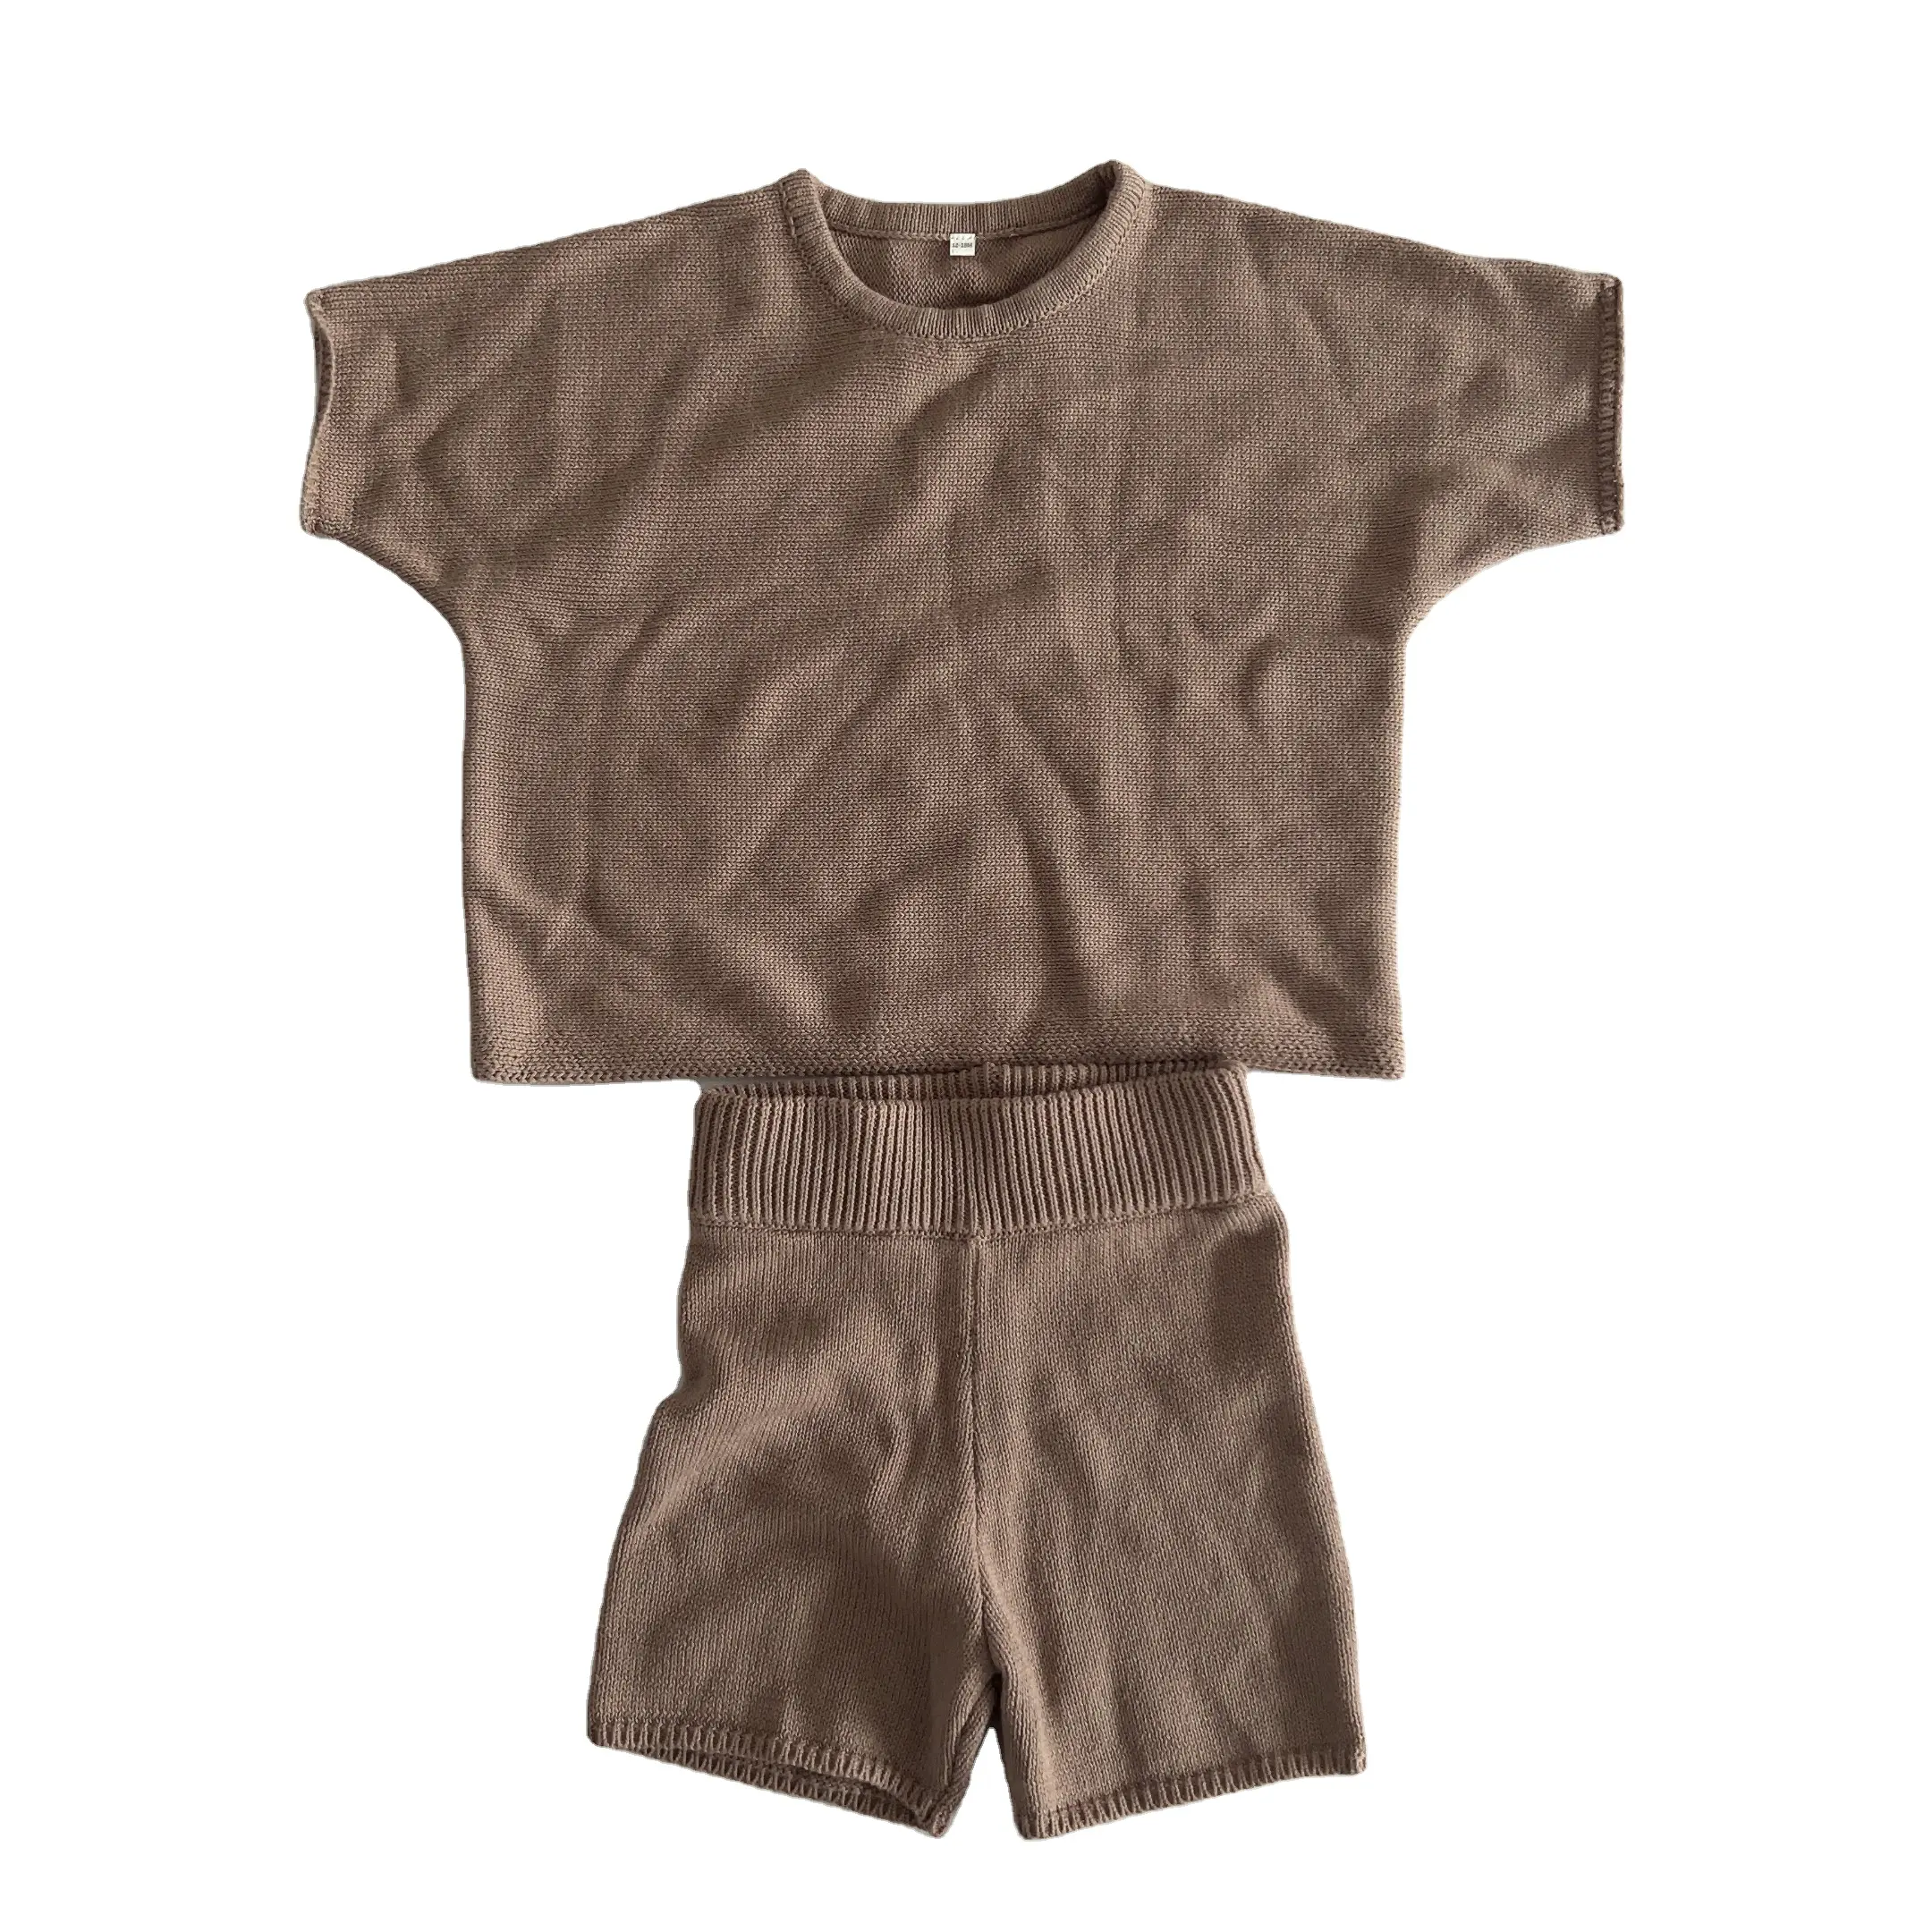 Pullover zweiteilige Baby gestrickte Kurzarm Shorts mit Rundhals ausschnitt Anzug Jungen und Mädchen Strick pullover Baby anzug Sommerkleid ung Set